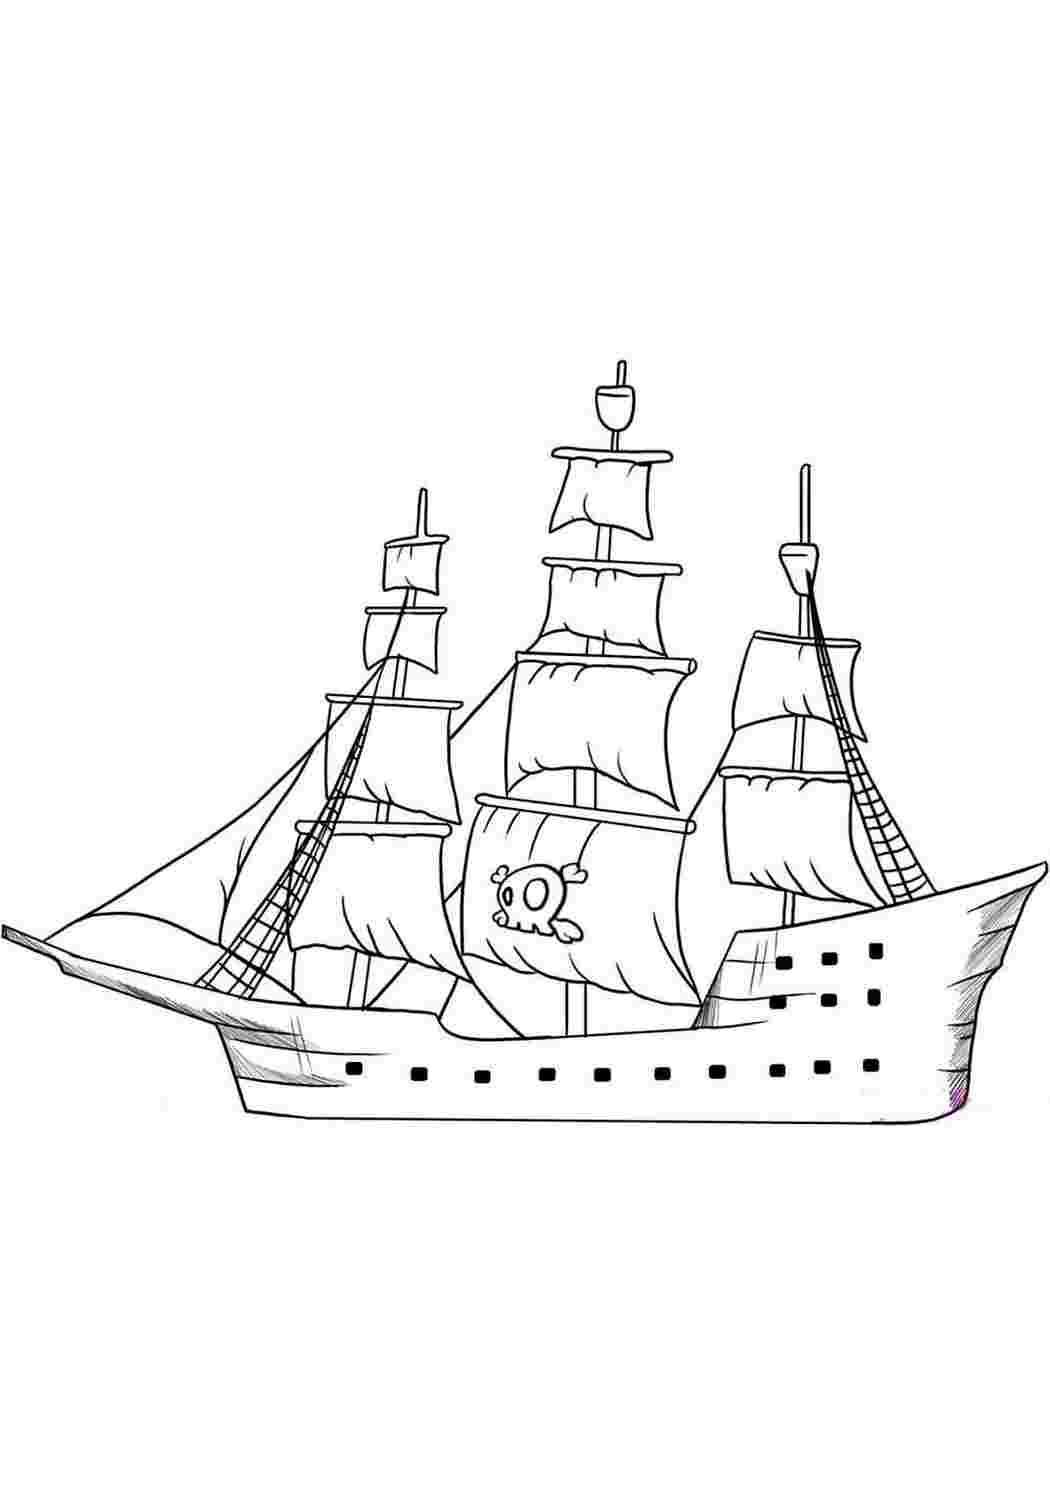 Раскраски раскраски для мальчиков раскраска корабль. Раскраски в формате А4. раскраски для мальчиков раскраска корабль. Разукрашка.